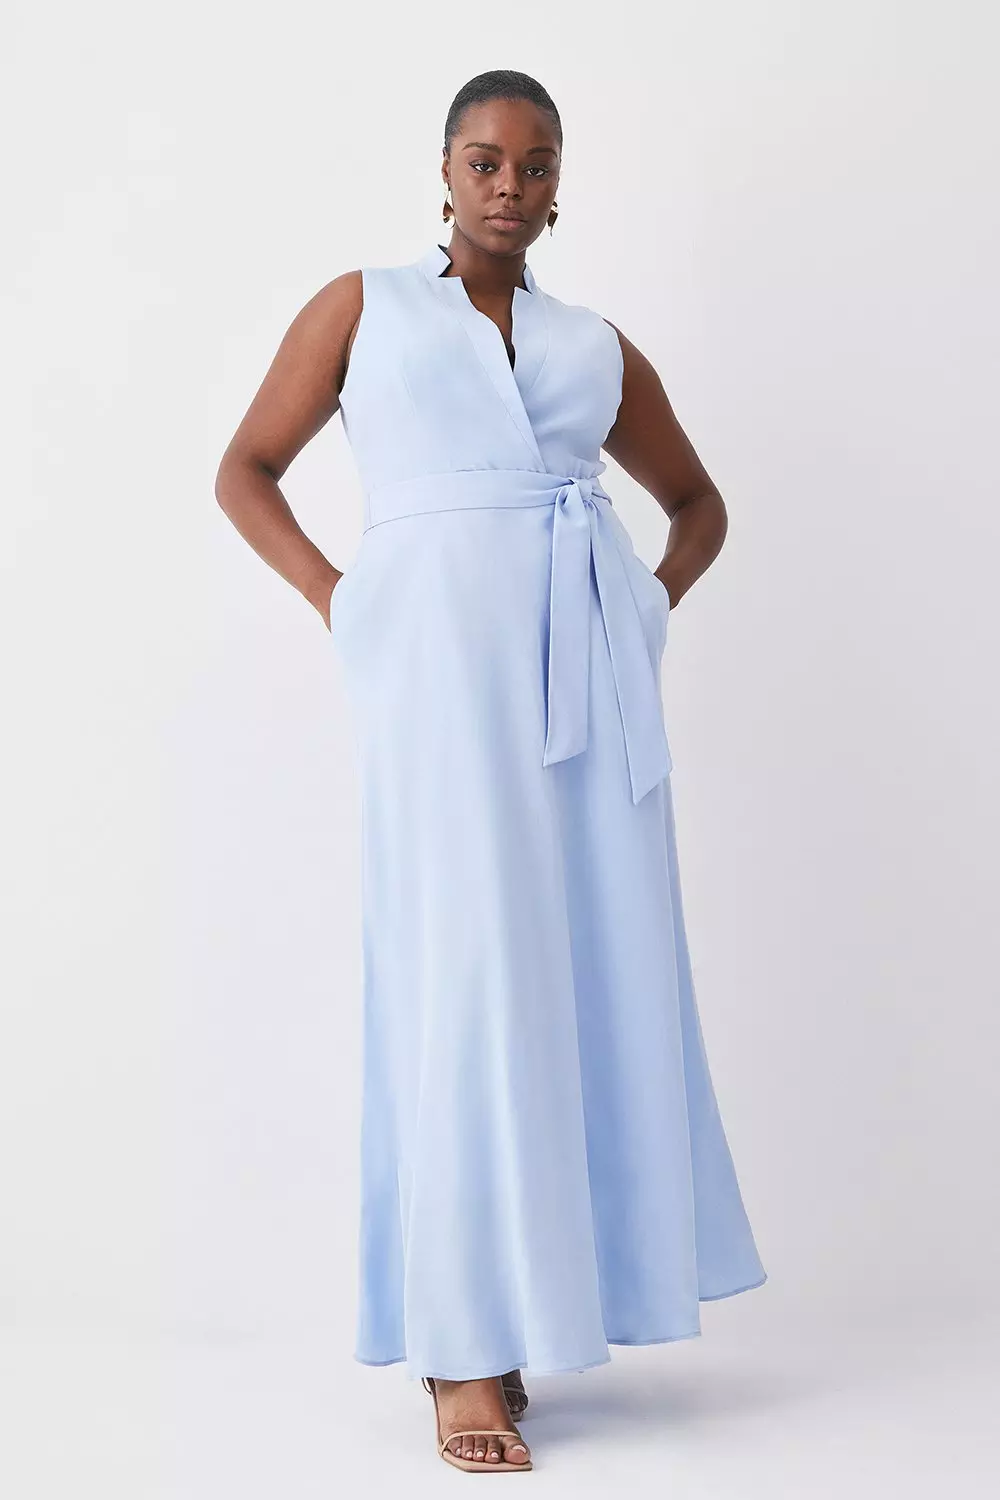 Plus Size Dress, Blue Linen Dress, Plus Size Clothing, Linen Dress